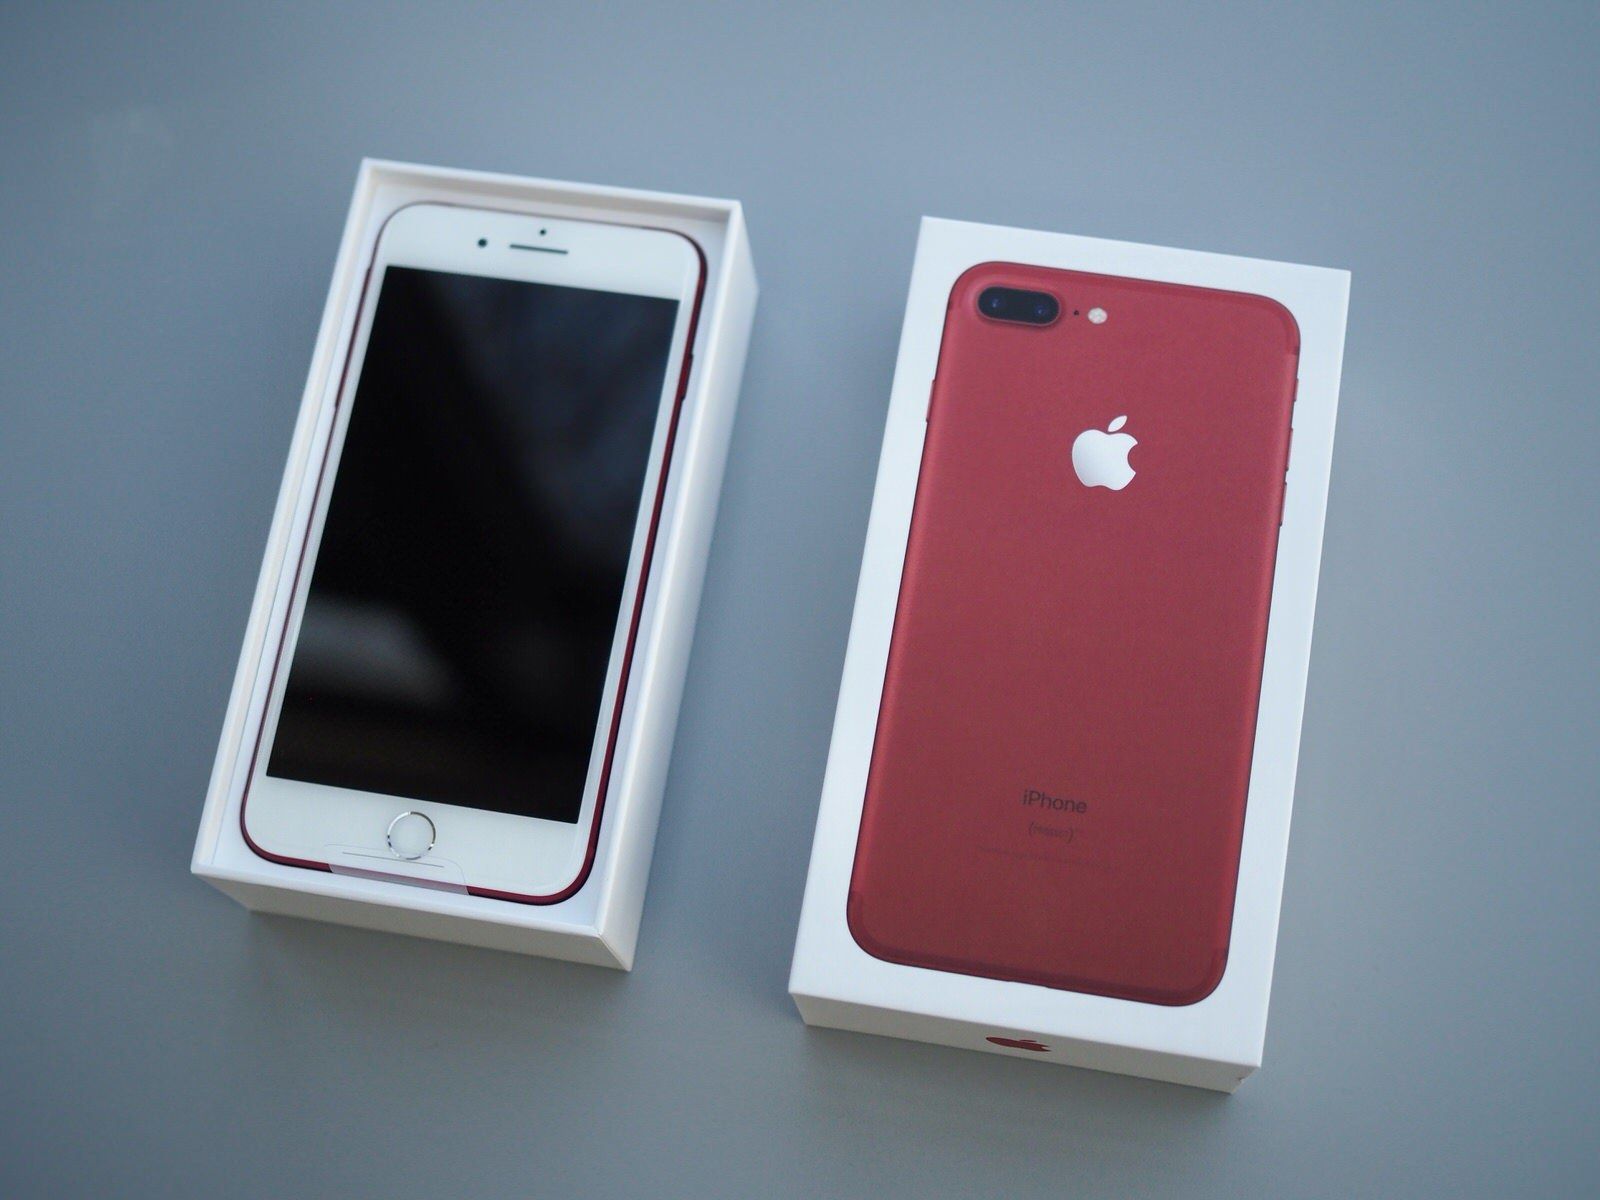 紅色超靚勁型！PRODUCT RED iPhone 7 / 7 Plus 香港開箱 + 上手評測 - 香港 unwire.hk